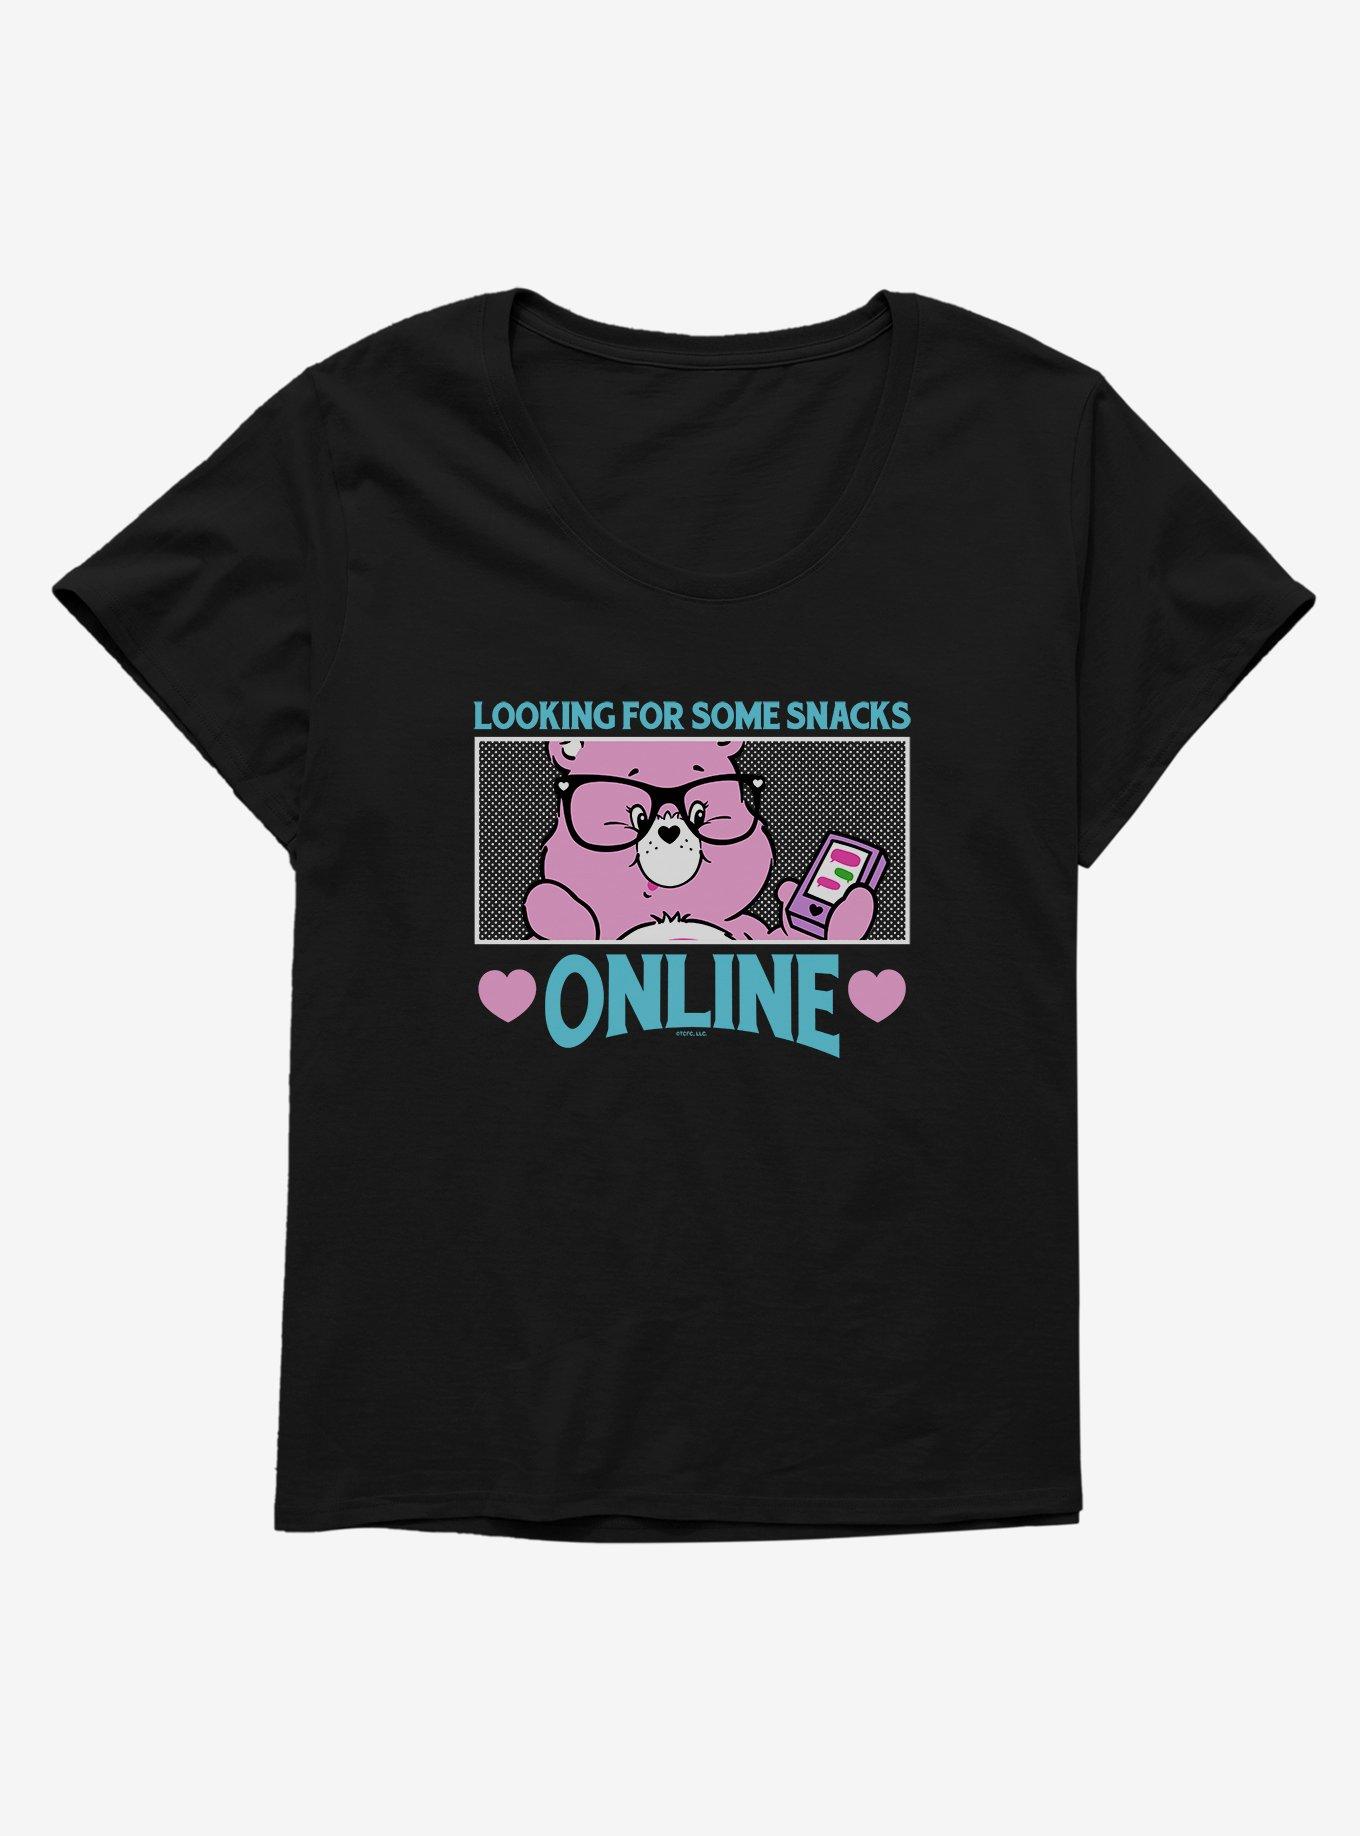 Care Bears Online Snacks Girls T-Shirt Plus